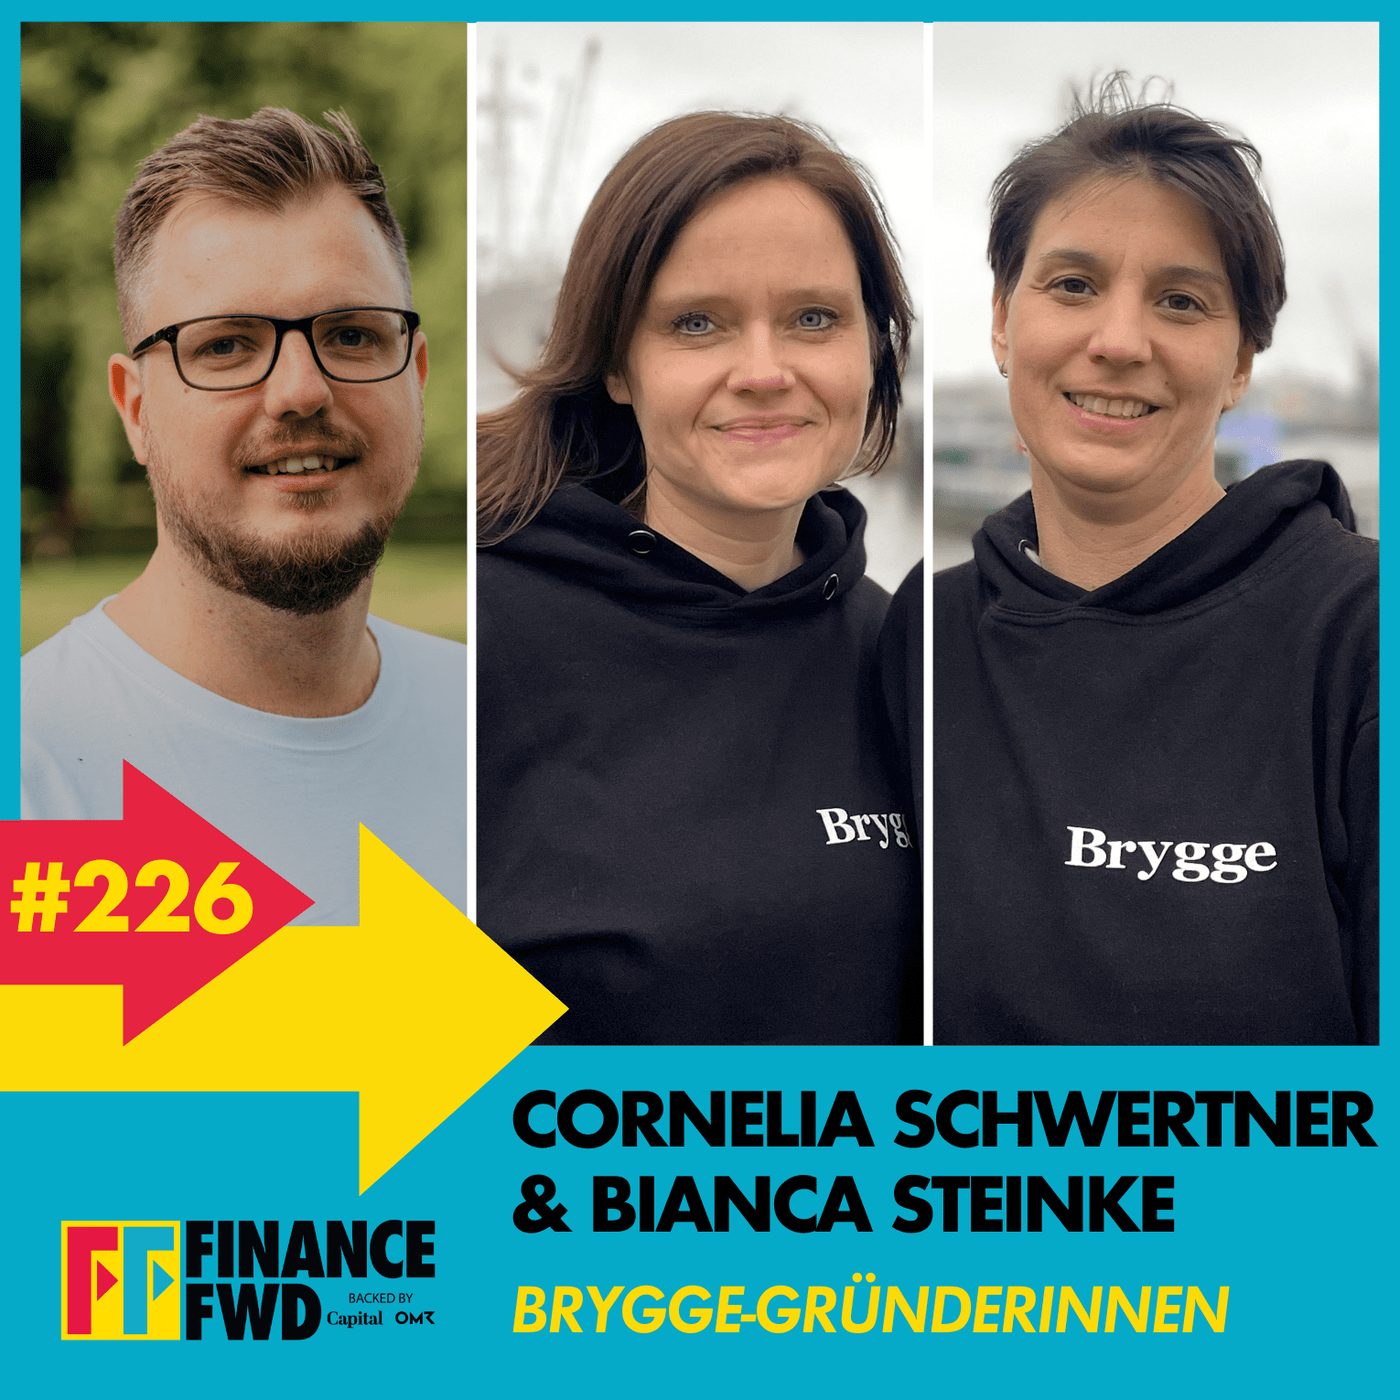 FinanceFWD #226 mit Brygge-Gründerinnen Cornelia Schwertner und Bianca Steinke